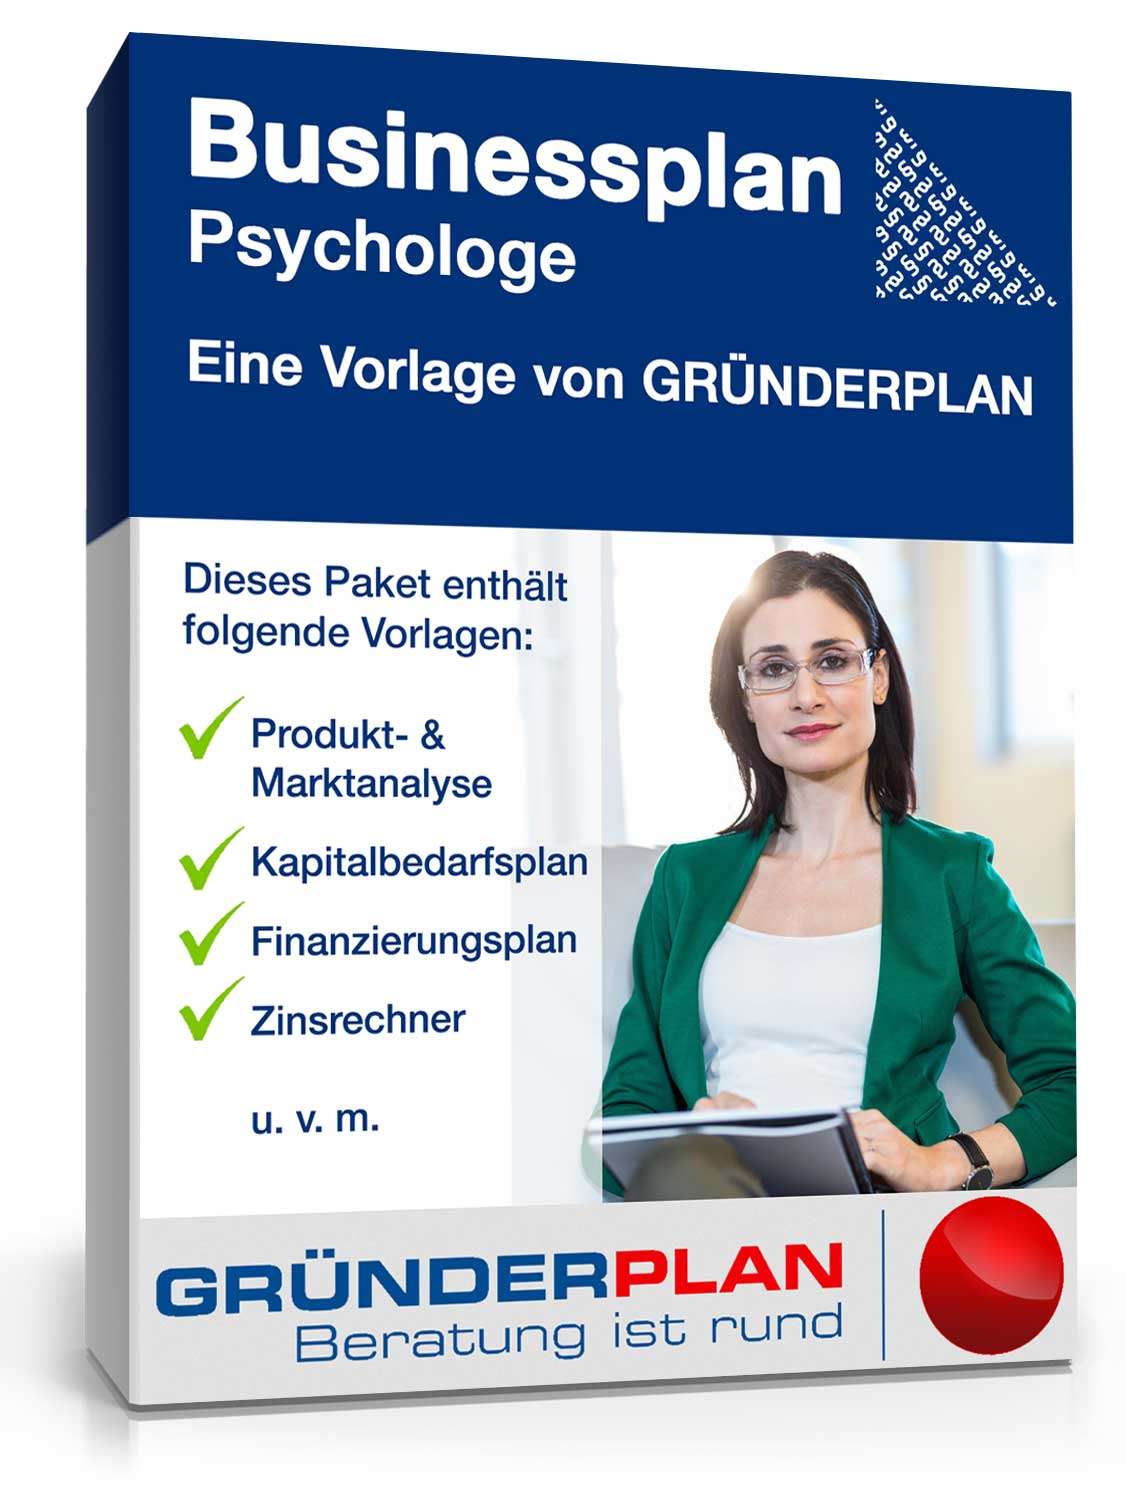 Hauptbild des Produkts: Businessplan Psychologe von Gründerplan